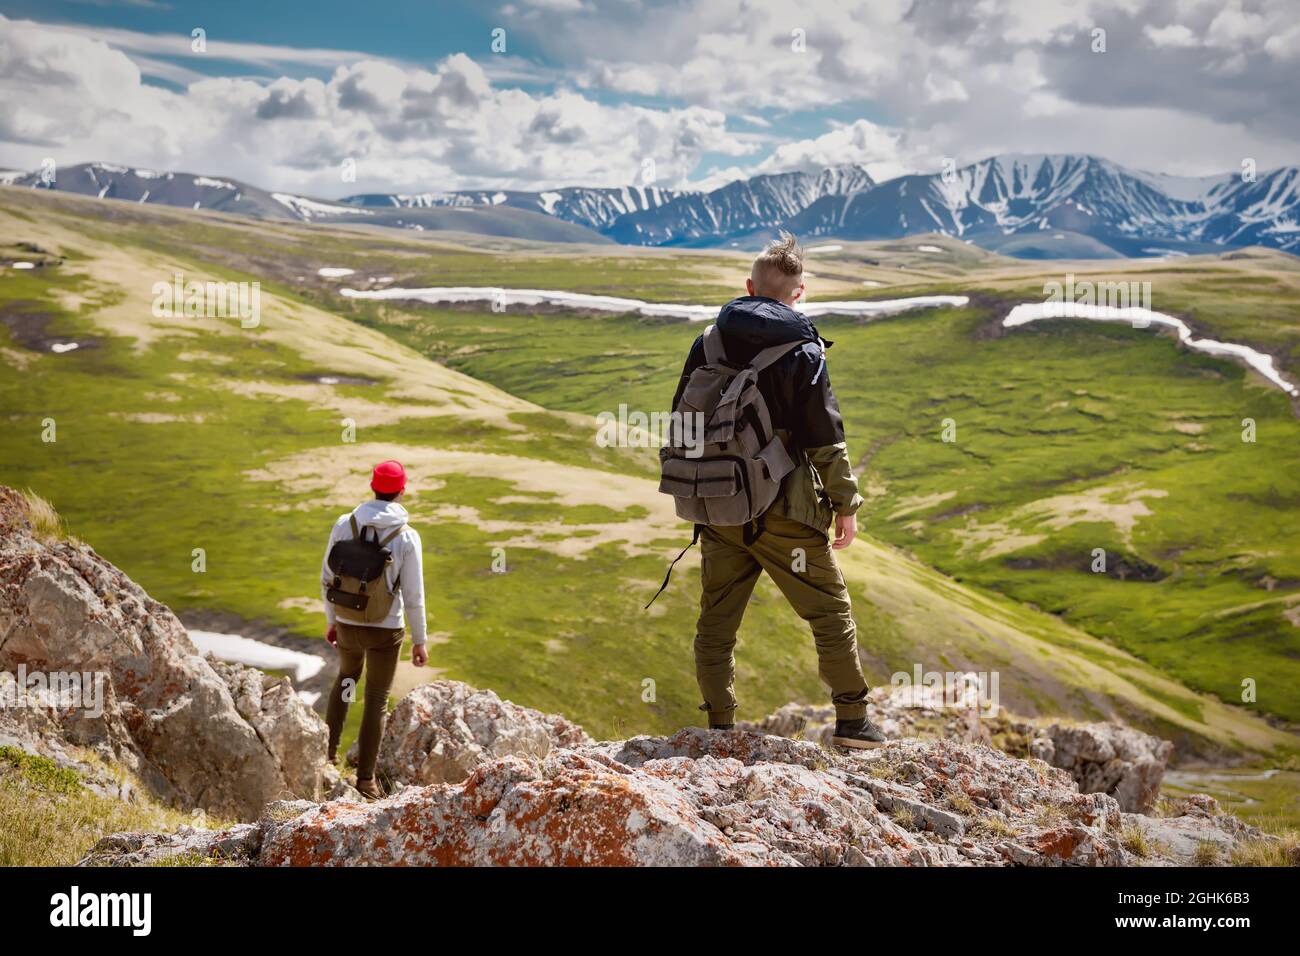 Deux randonneurs se tient avec de petits sacs à dos et jouit d'une vue sur la vallée des montagnes Banque D'Images